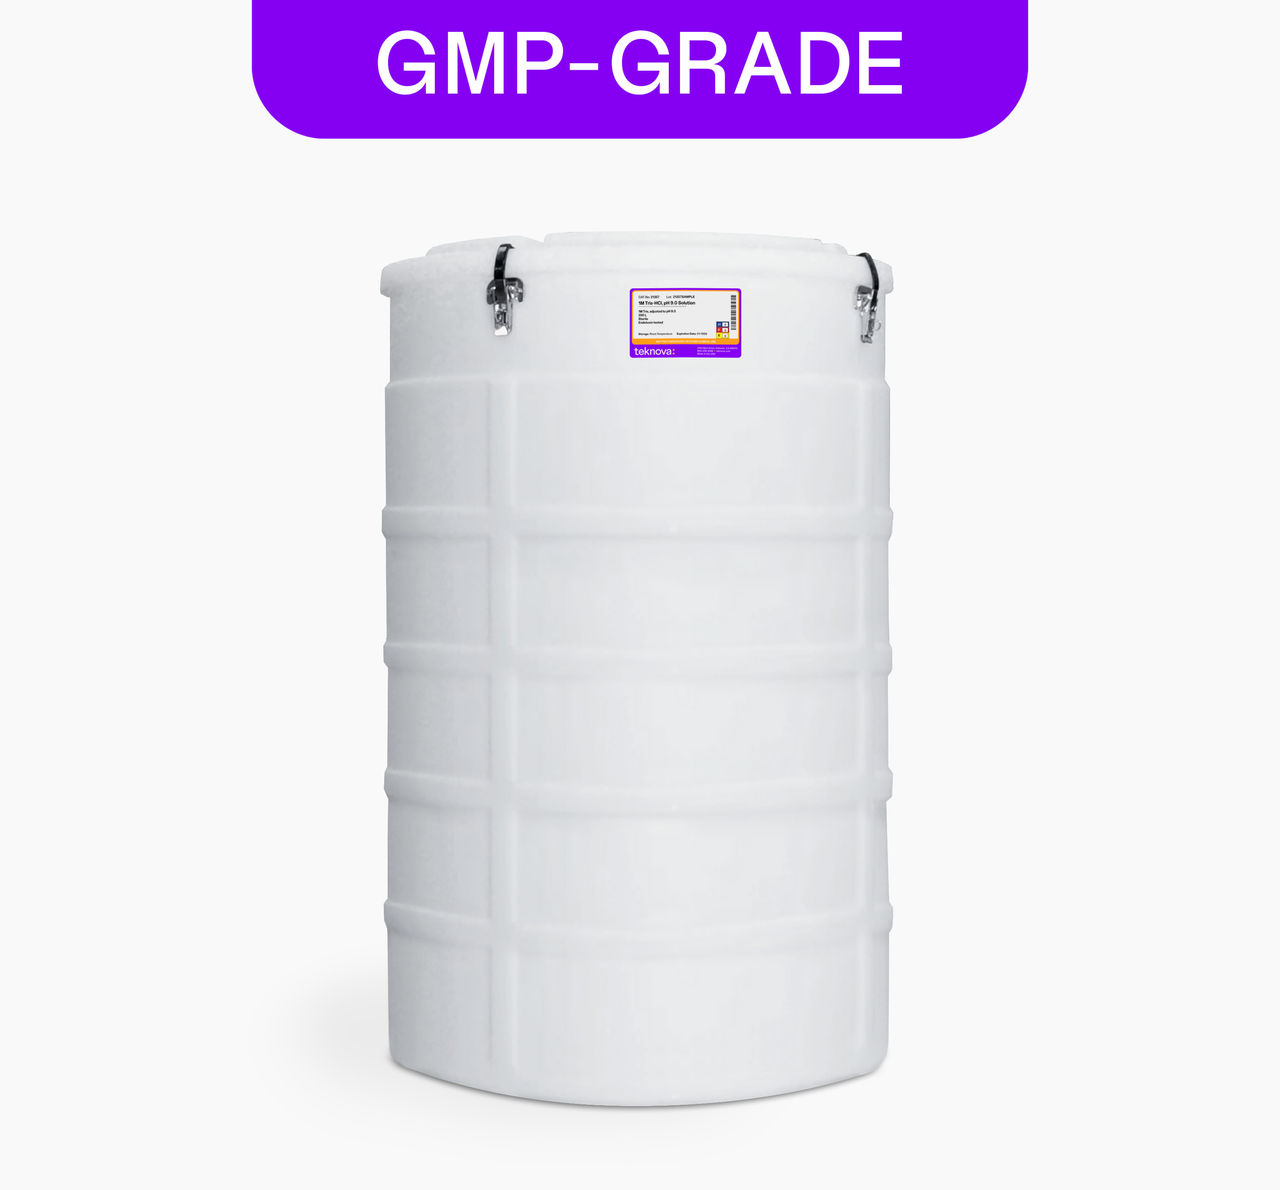 1M Tris-HCl, pH 9.0 Solution, 200L Bag, GMP-grade